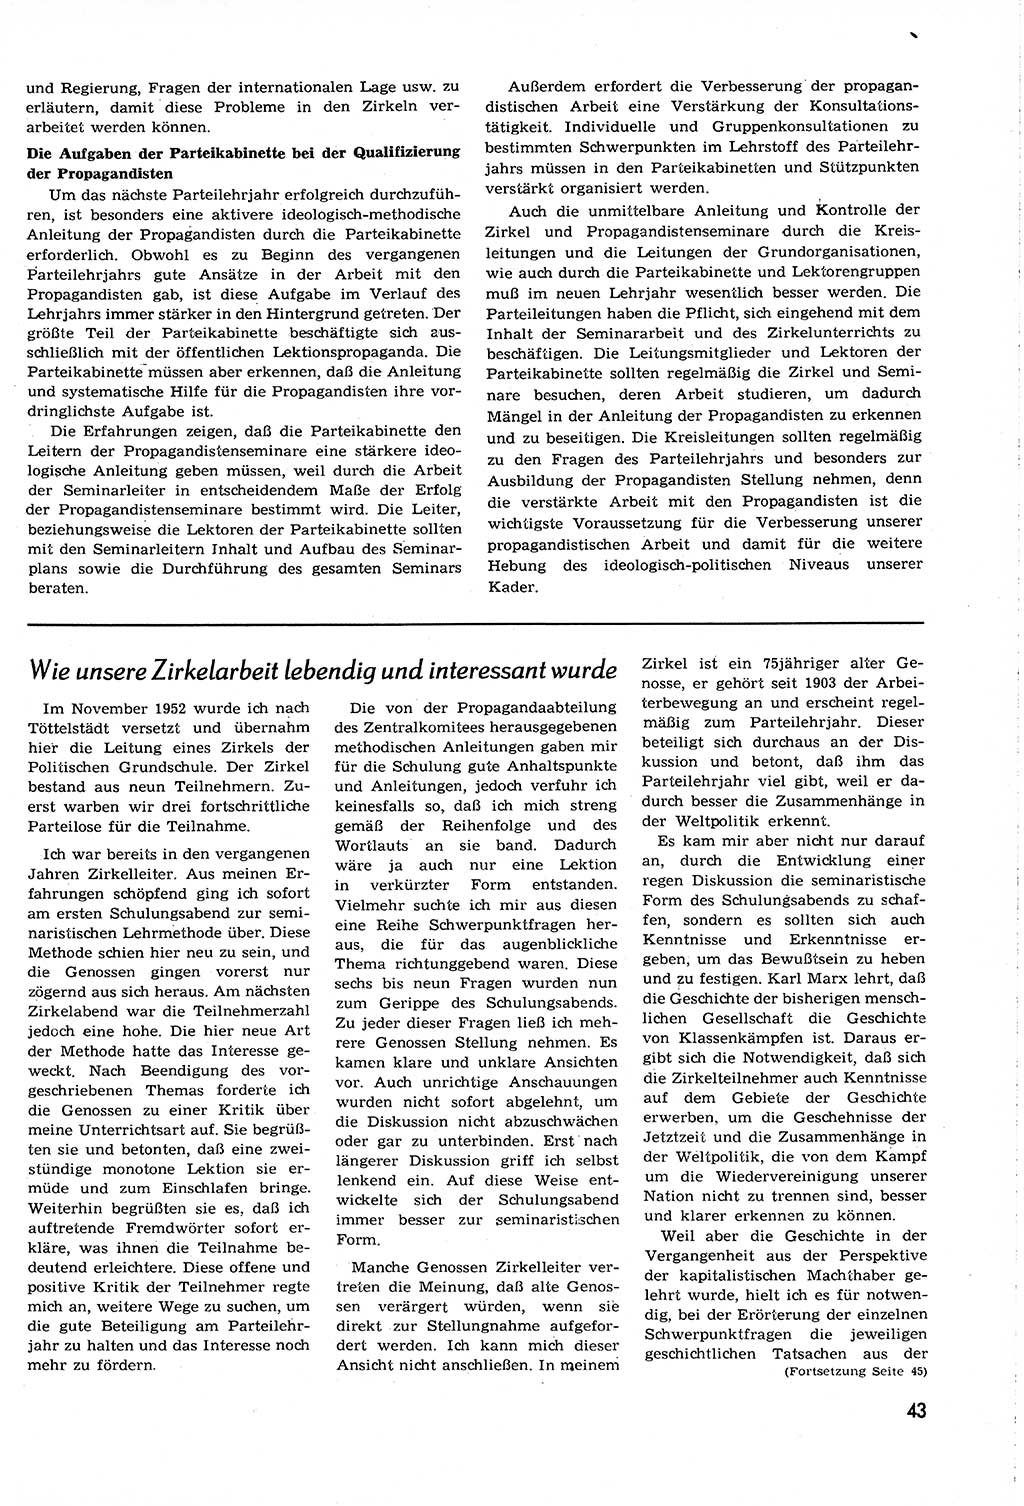 Neuer Weg (NW), Organ des Zentralkomitees (ZK) [Sozialistische Einheitspartei Deutschlands (SED)] für alle Parteiarbeiter, 8. Jahrgang [Deutsche Demokratische Republik (DDR)] 1953, Heft 16/43 (NW ZK SED DDR 1953, H. 16/43)